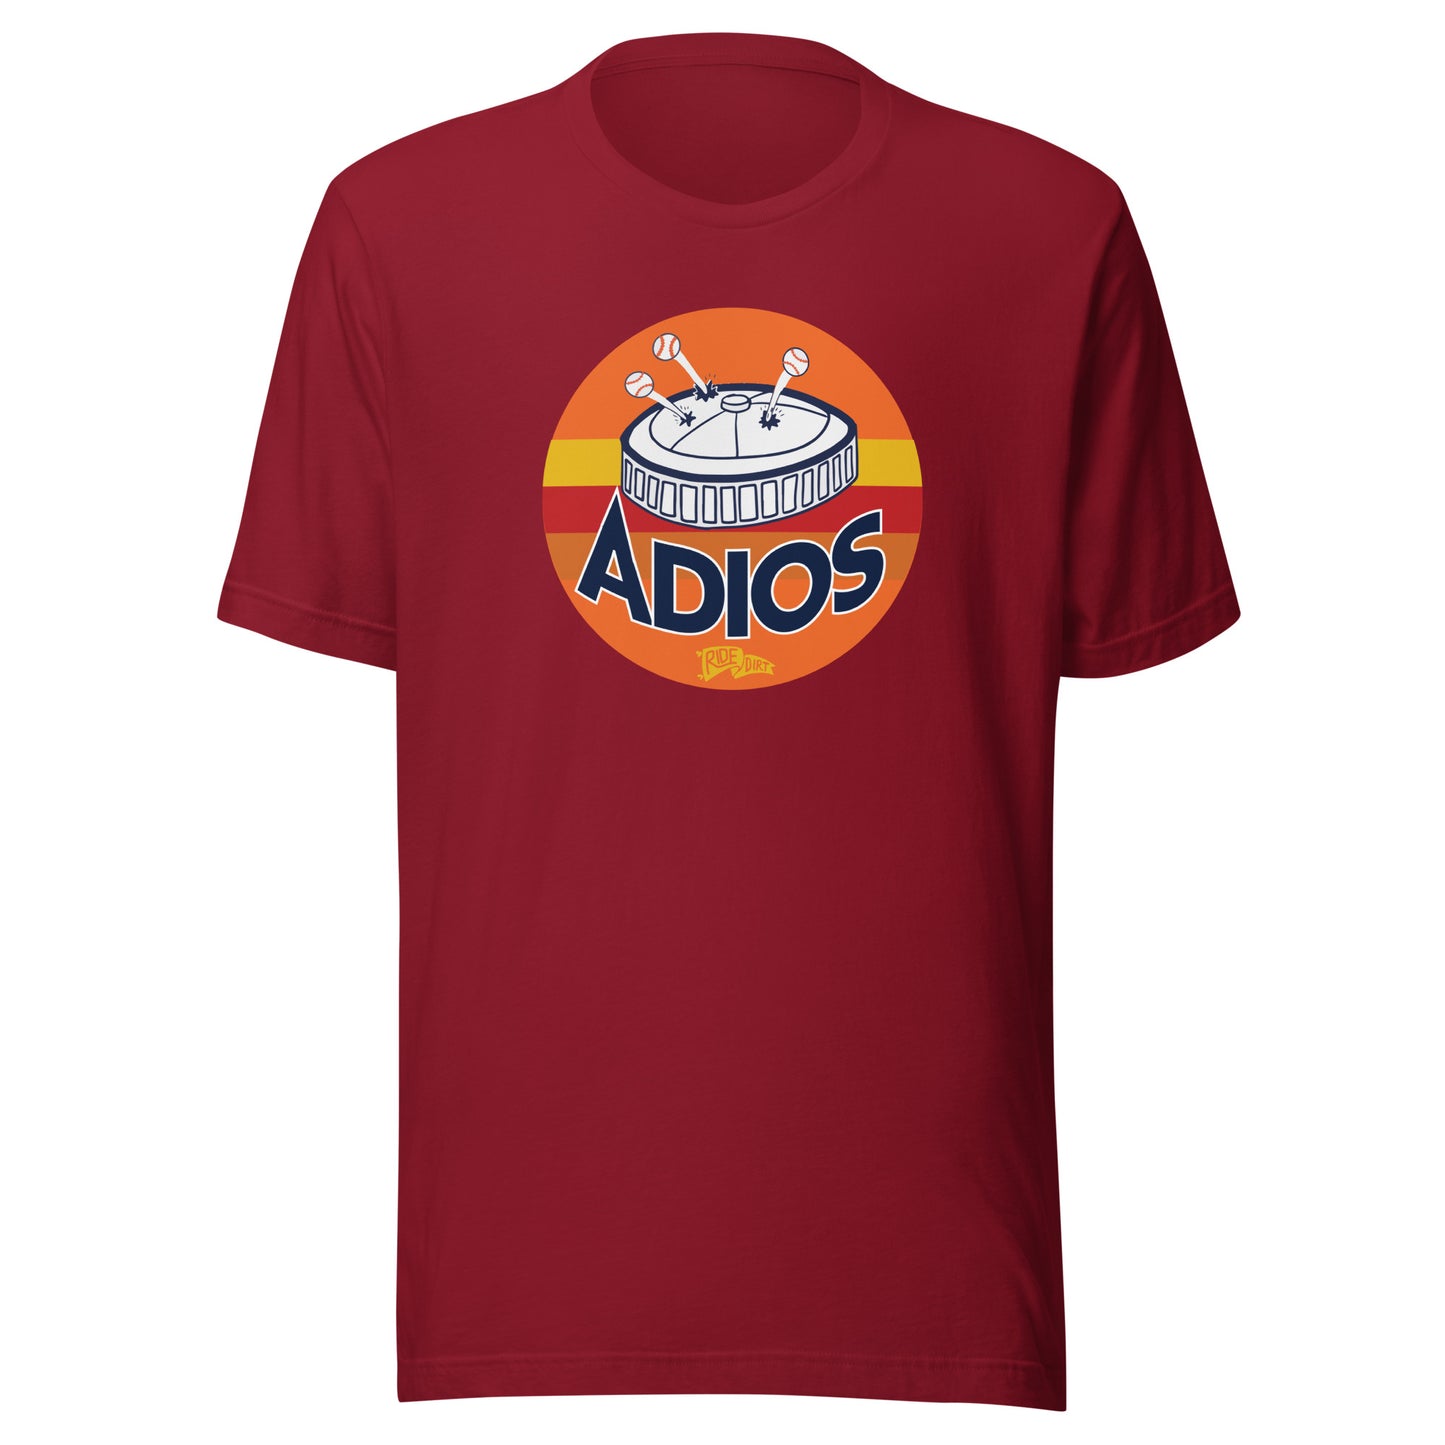 ADIOSTROS T-Shirt by RDSCo